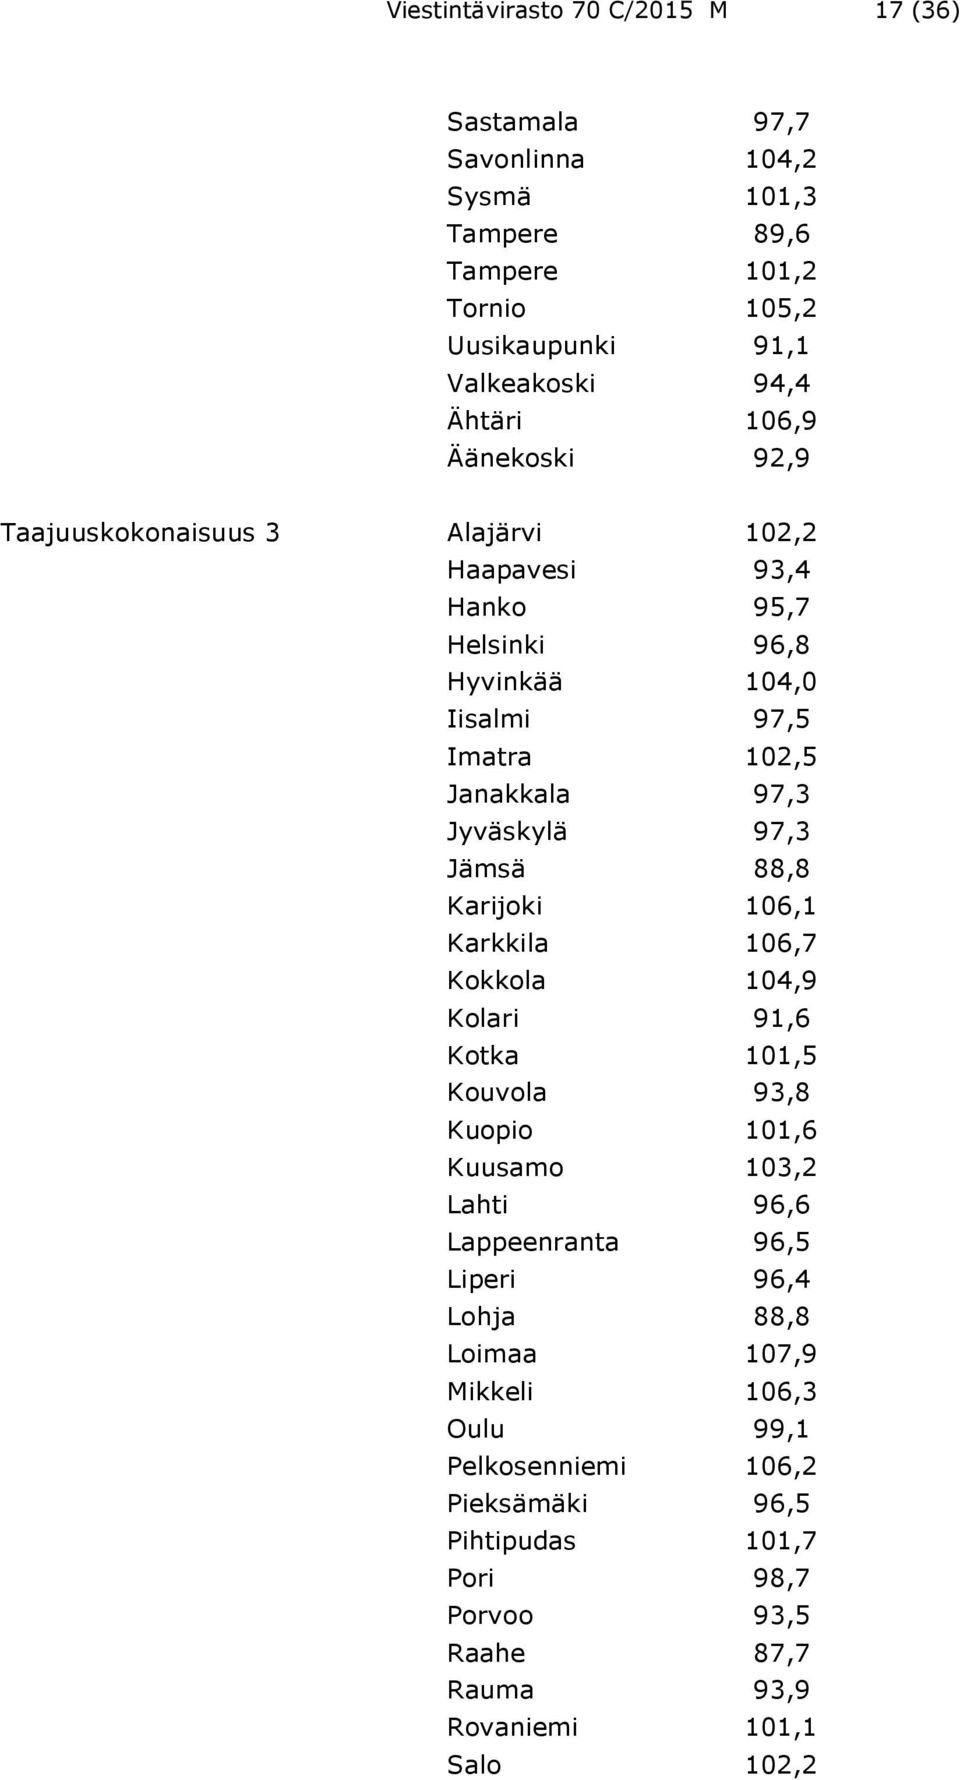 97,3 Jämsä 88,8 Karijoki 106,1 Karkkila 106,7 Kokkola 104,9 Kolari 91,6 Kotka 101,5 Kouvola 93,8 Kuopio 101,6 Kuusamo 103,2 Lahti 96,6 Lappeenranta 96,5 Liperi 96,4